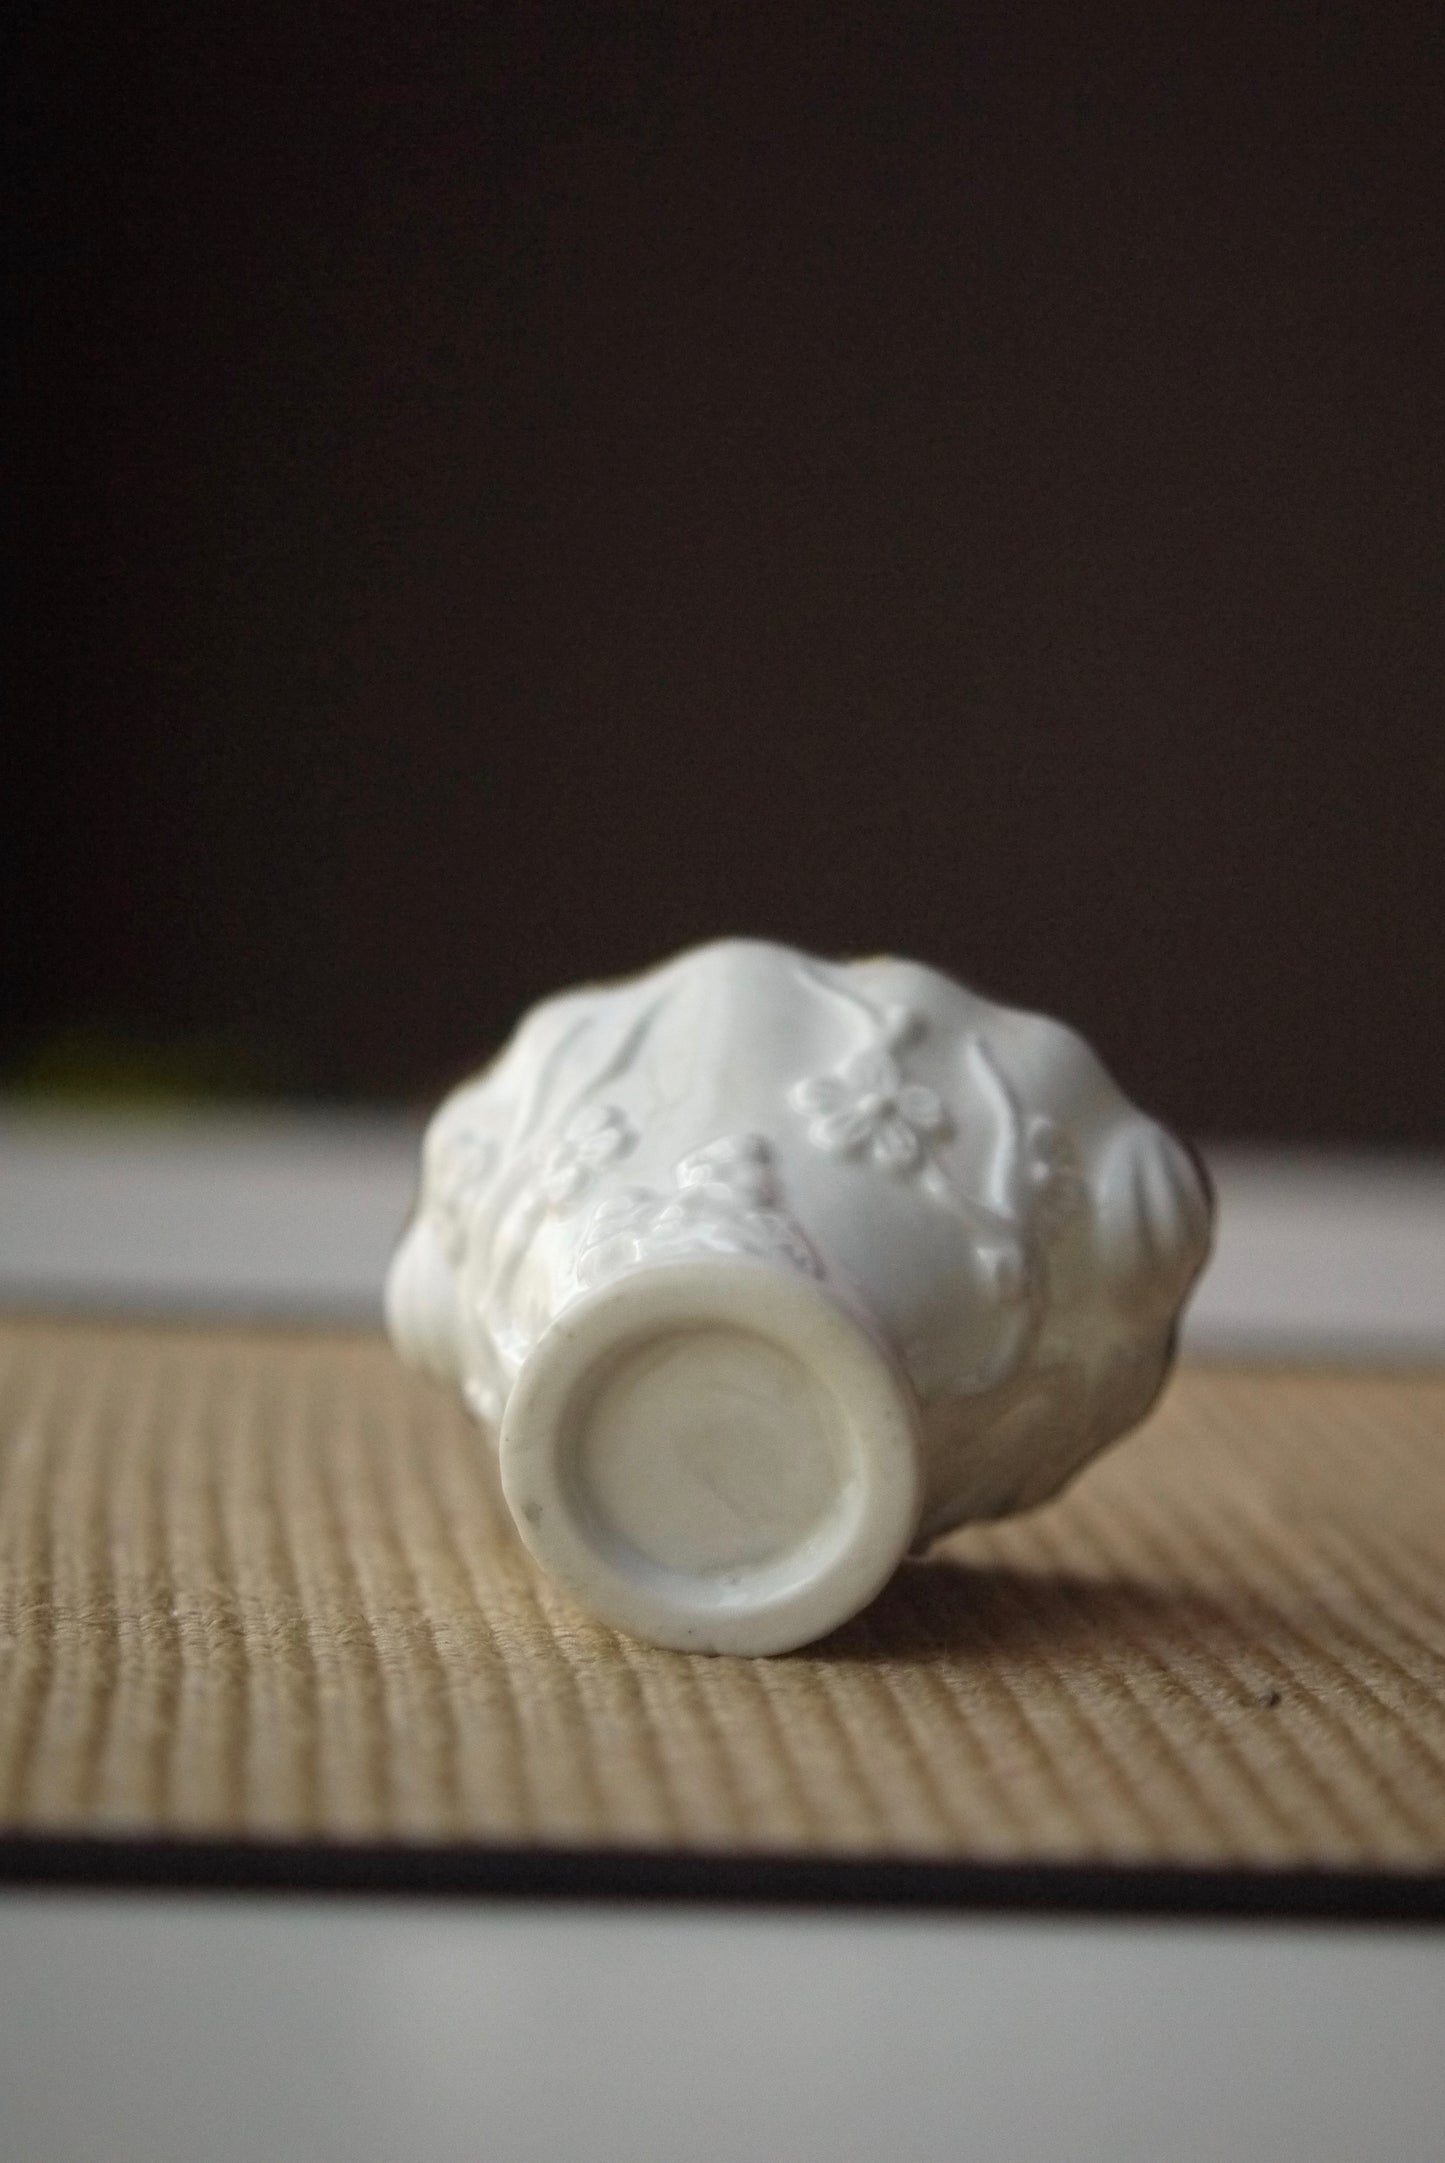 Plum Relief Teacup Qing Dynasty Antique Unique Mug BestCeramics